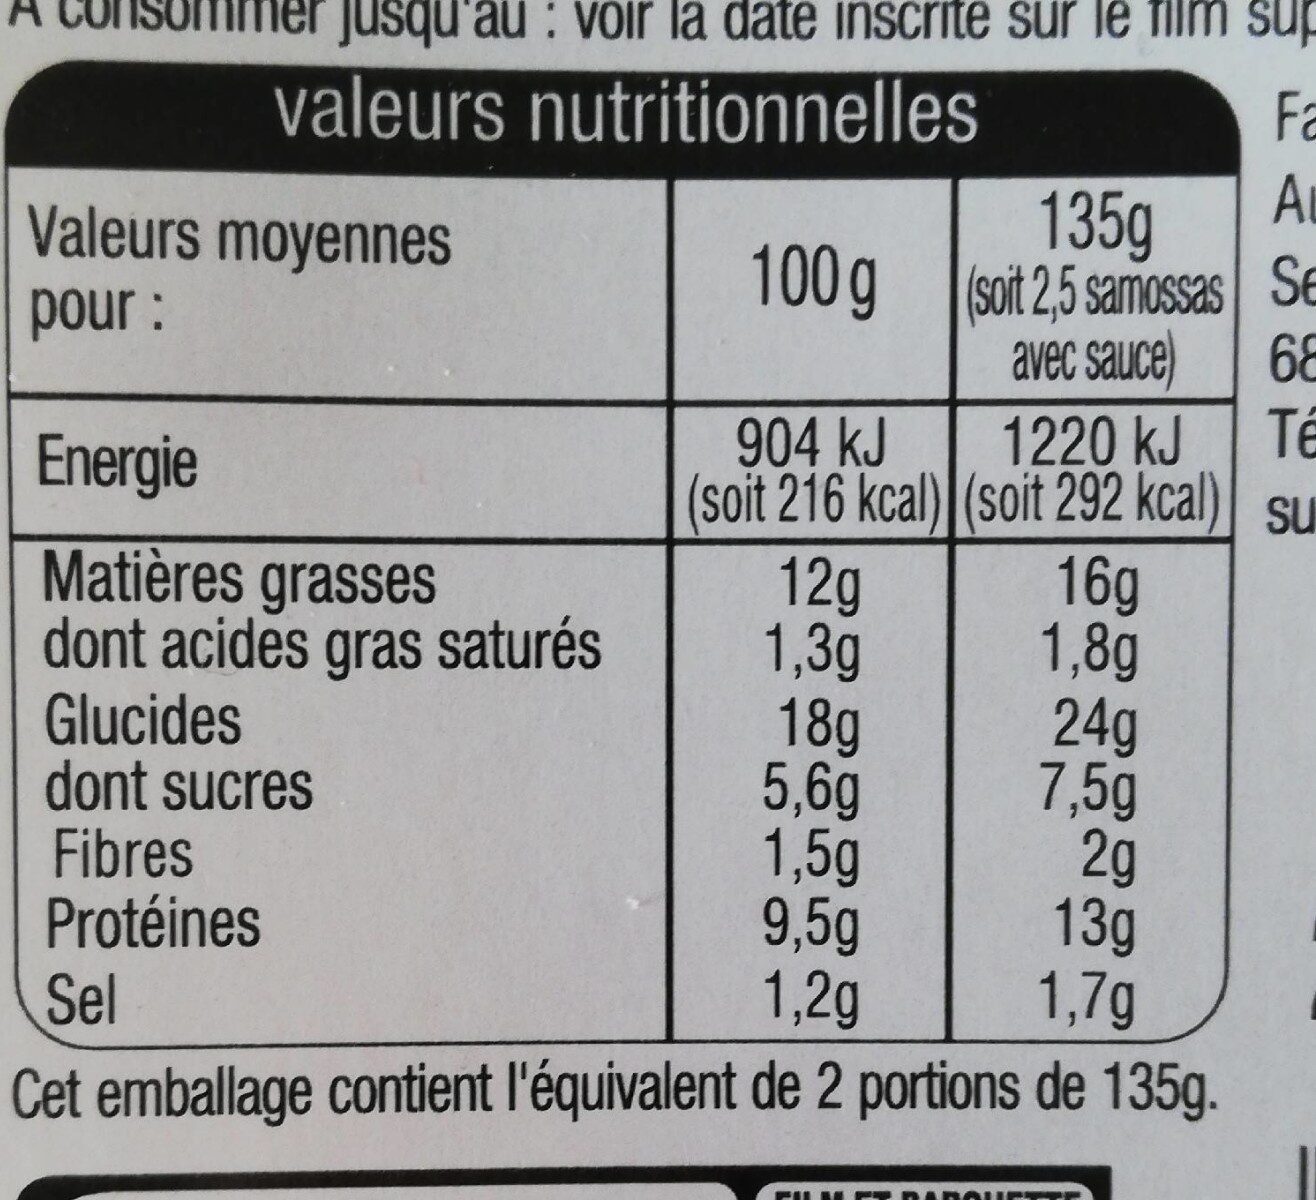 Recette d'indesamossa pouletsauces aigre douce4 +1 offert - Tableau nutritionnel